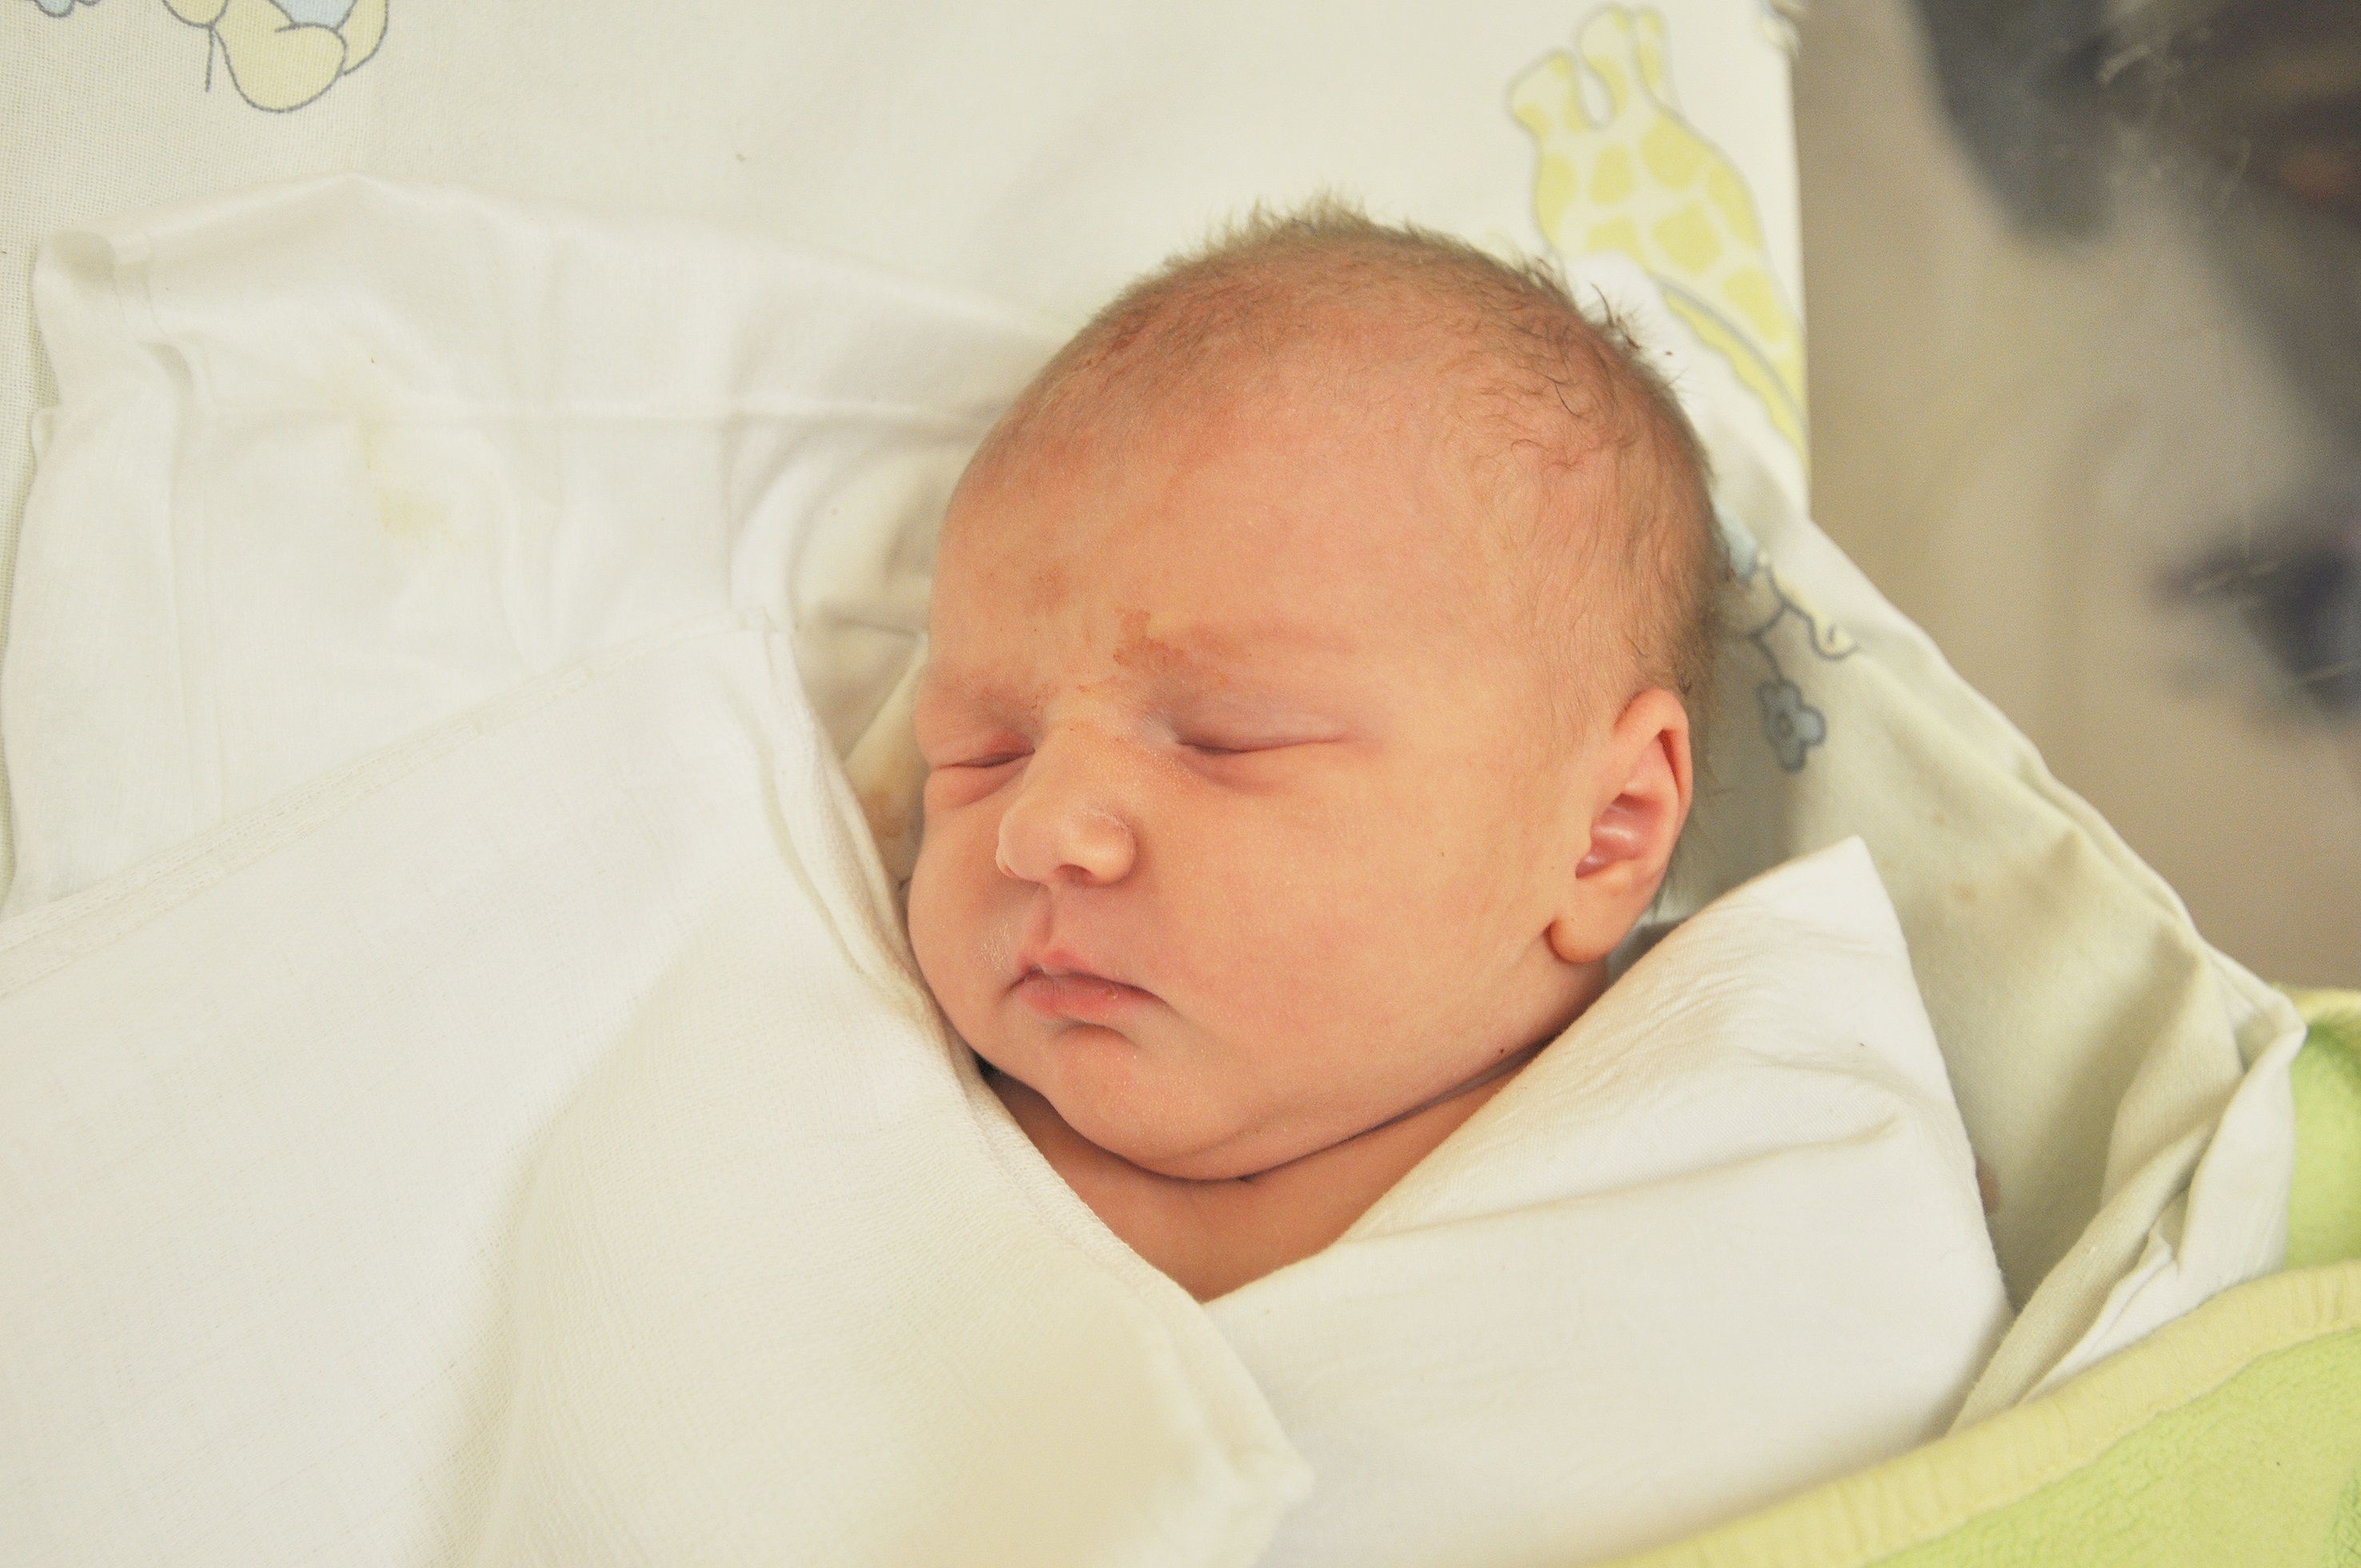 Iga Jabłońska jest nową raciborzanką. Przyszła na świat 14 kwietnia o 6.02. Ważąc 3060 g mierzyła 52 cm. Katarzyna i Paweł – jej rodzice – cieszą się z narodzin pierwszej pociechy.